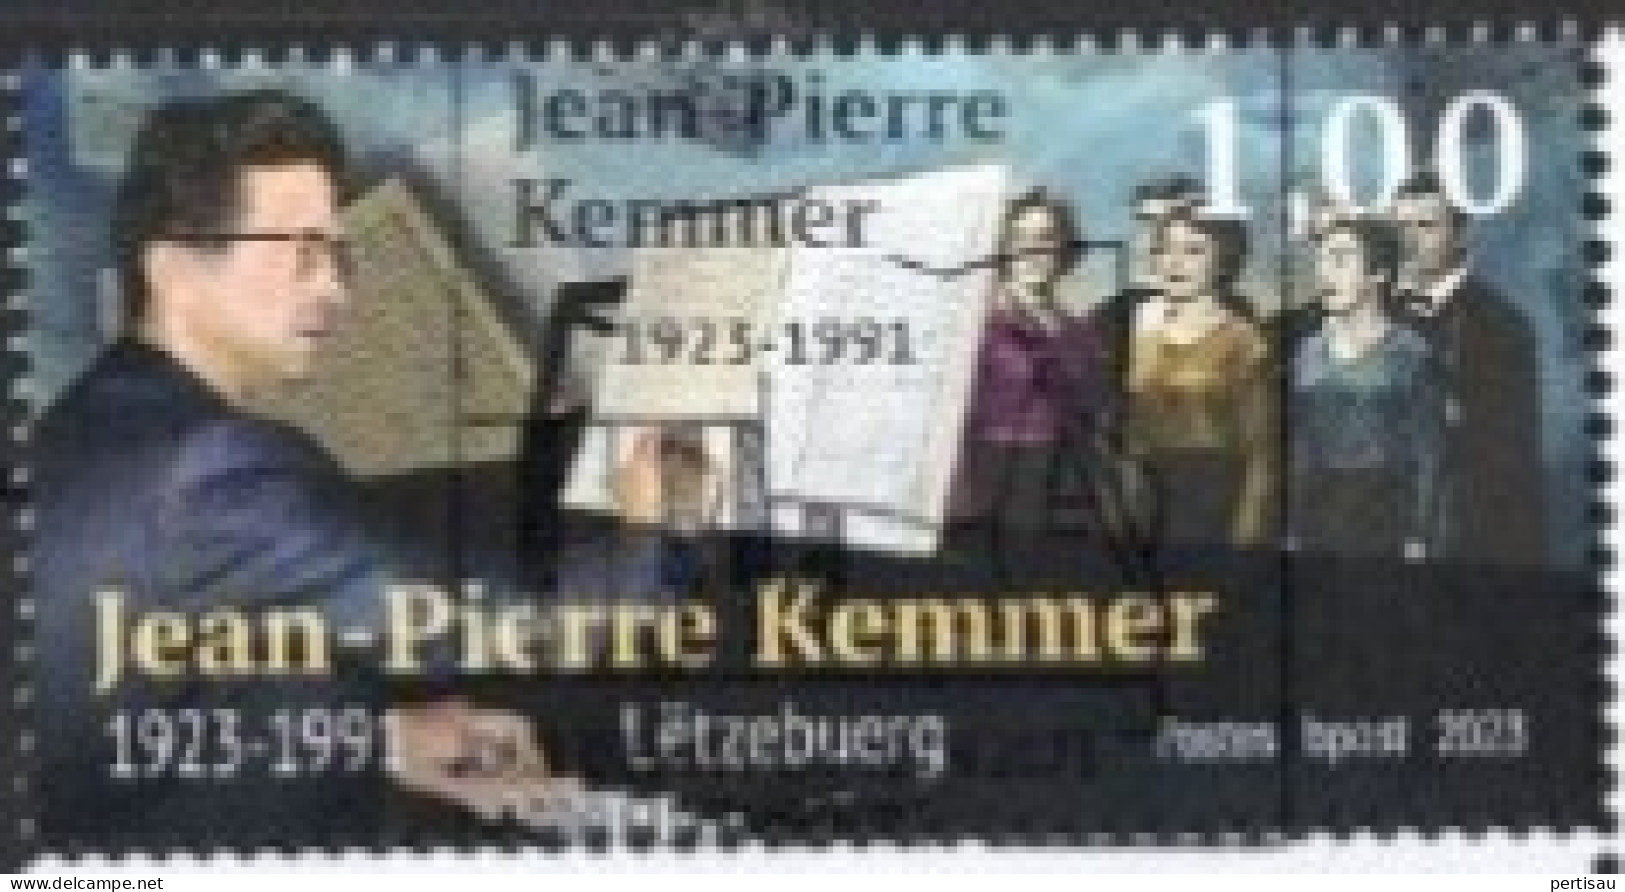 Jean-Pierre Kemmer Componist 2023 - Oblitérés